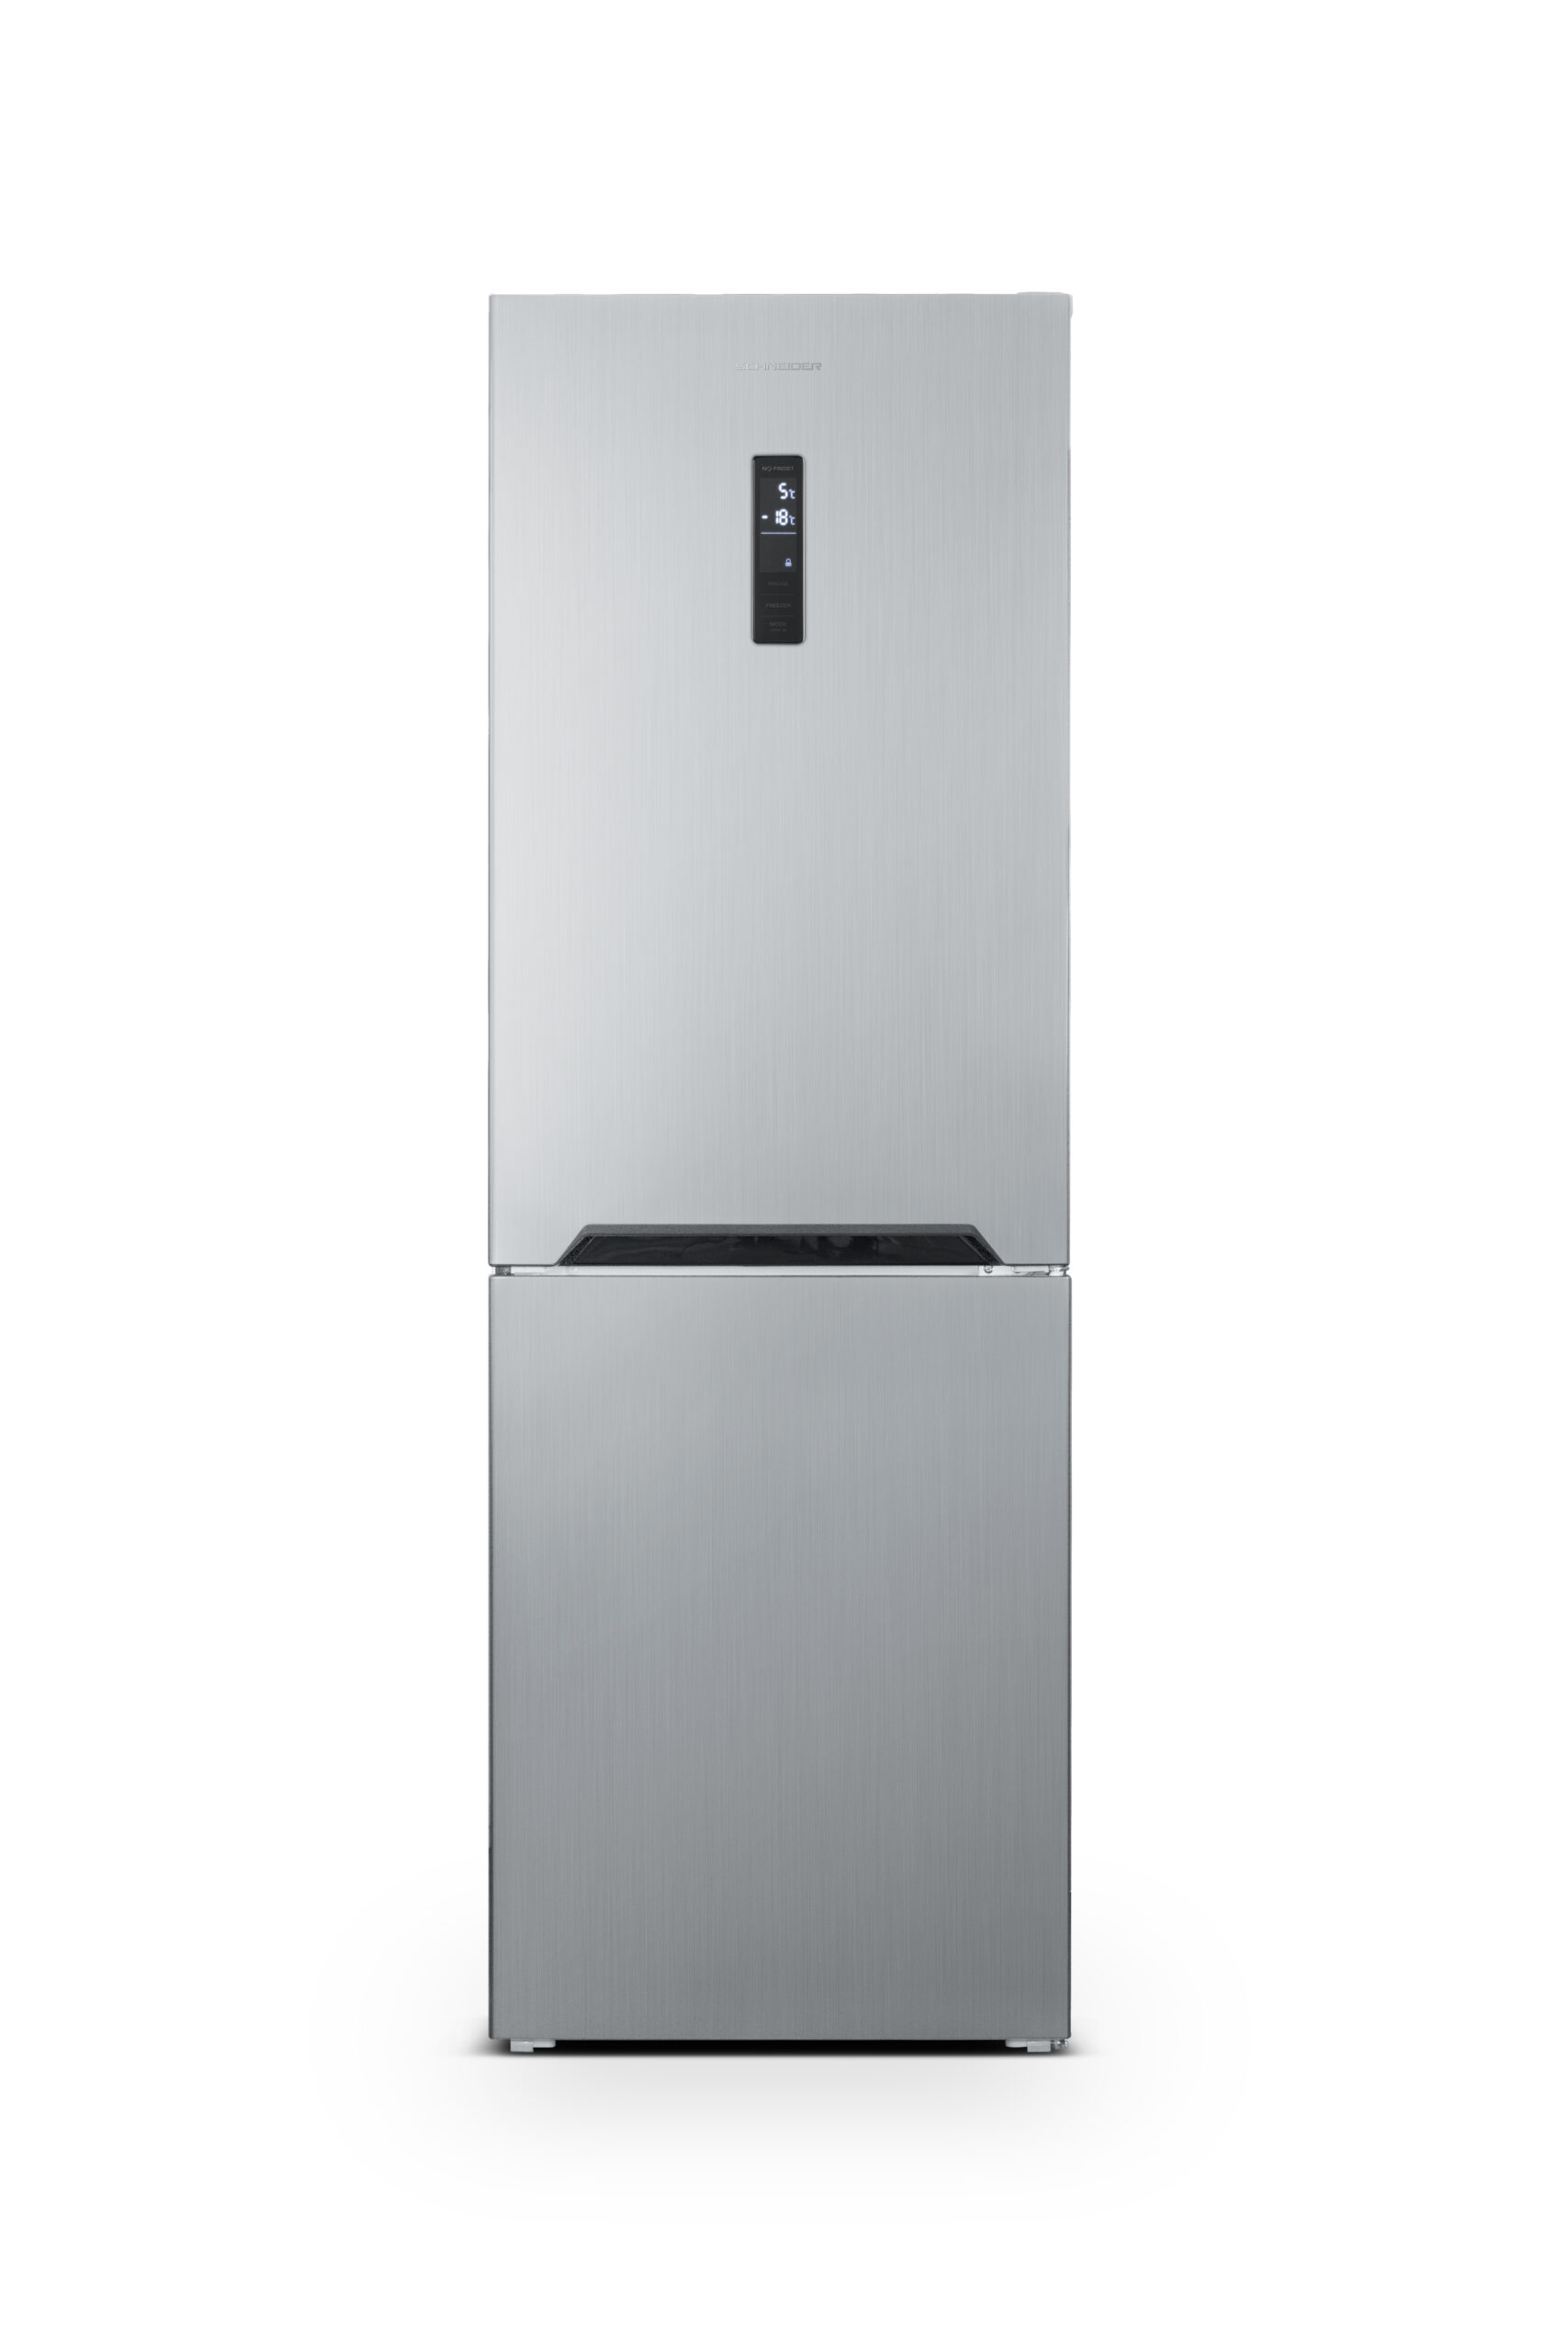 Combinaison réfrigérateur-congélateur - Total No Frost - 347 L - Inox